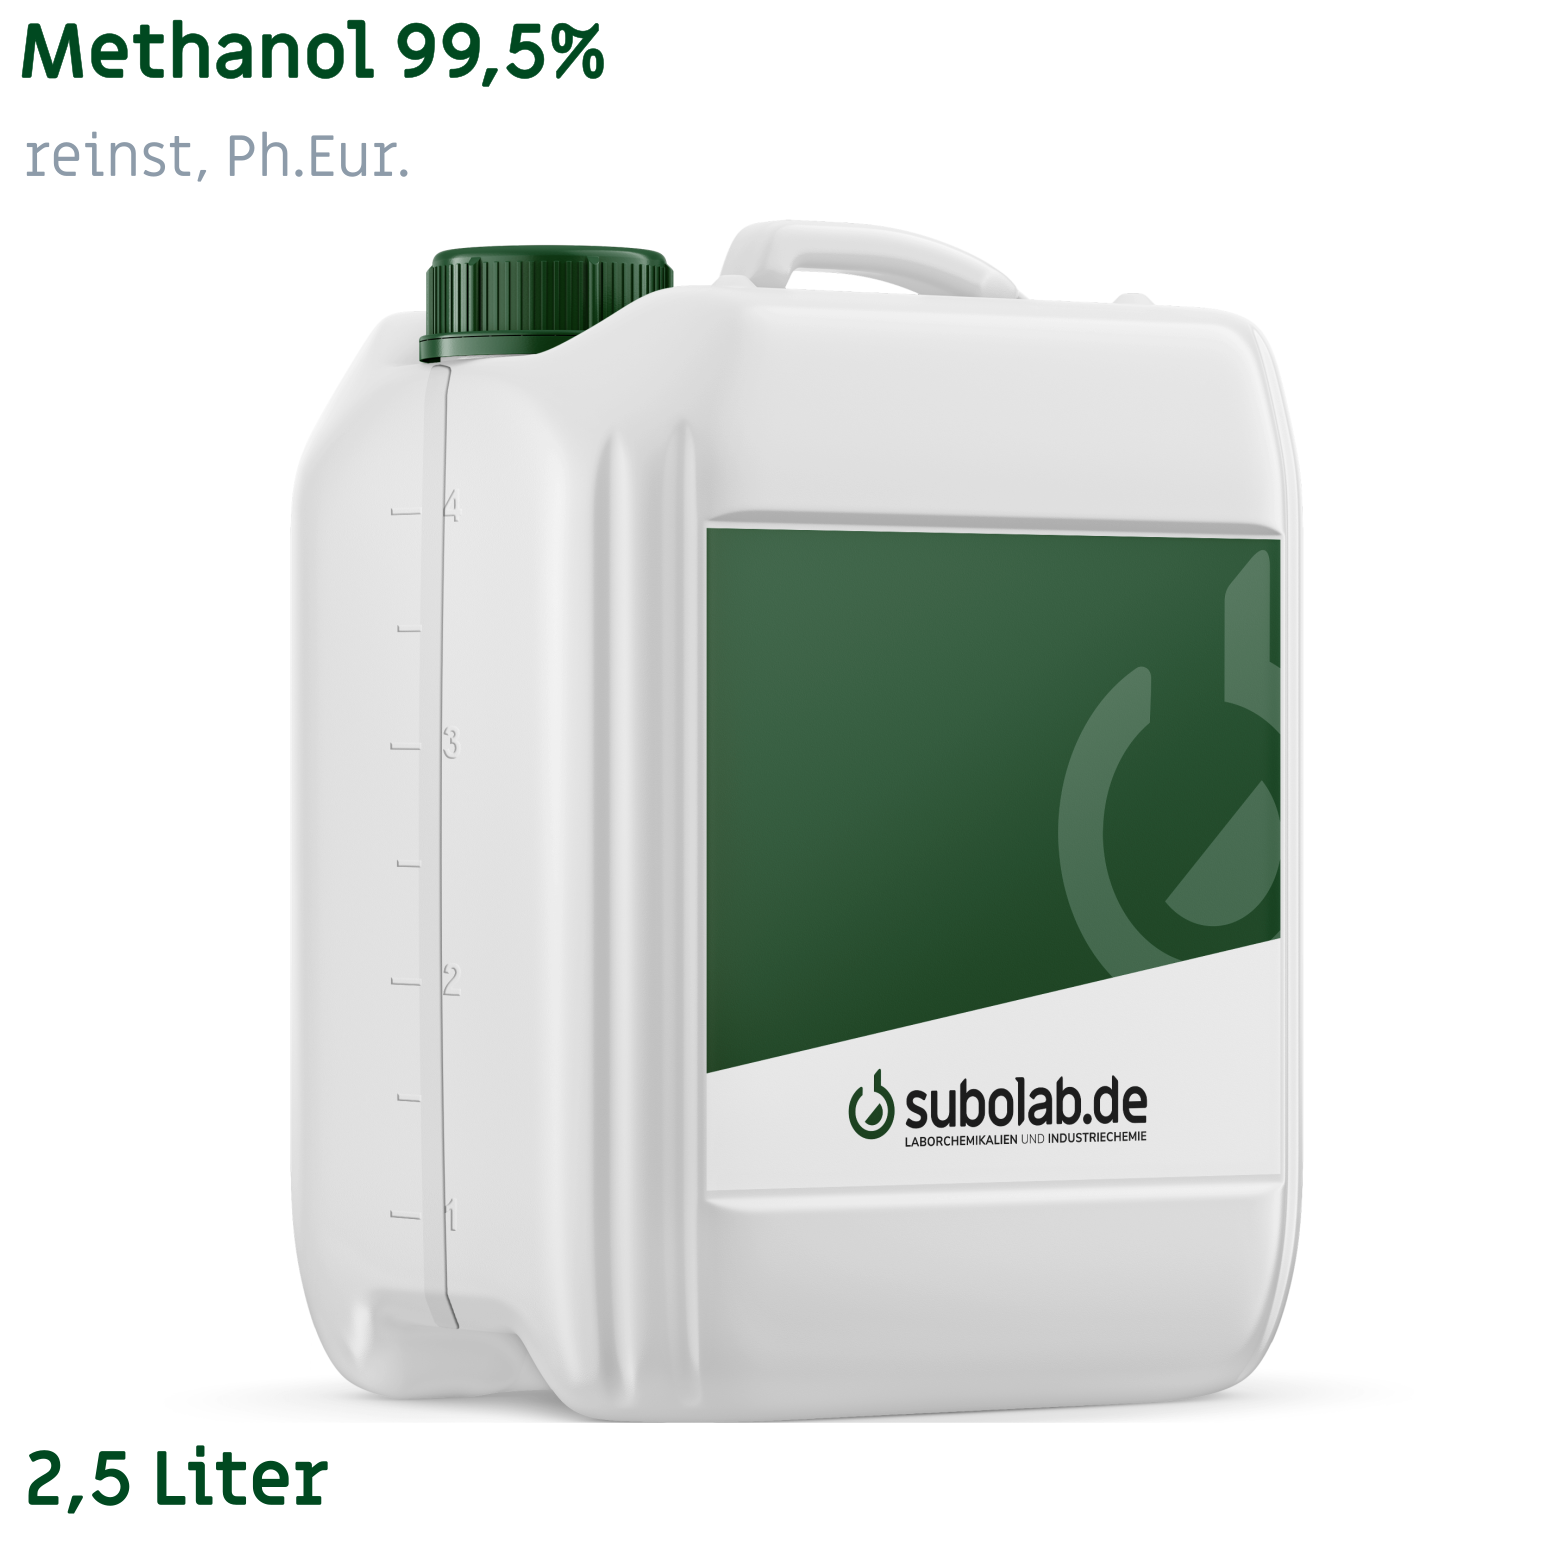 Bild von Methanol 99,5% reinst, Ph.Eur. (2,5 Liter)